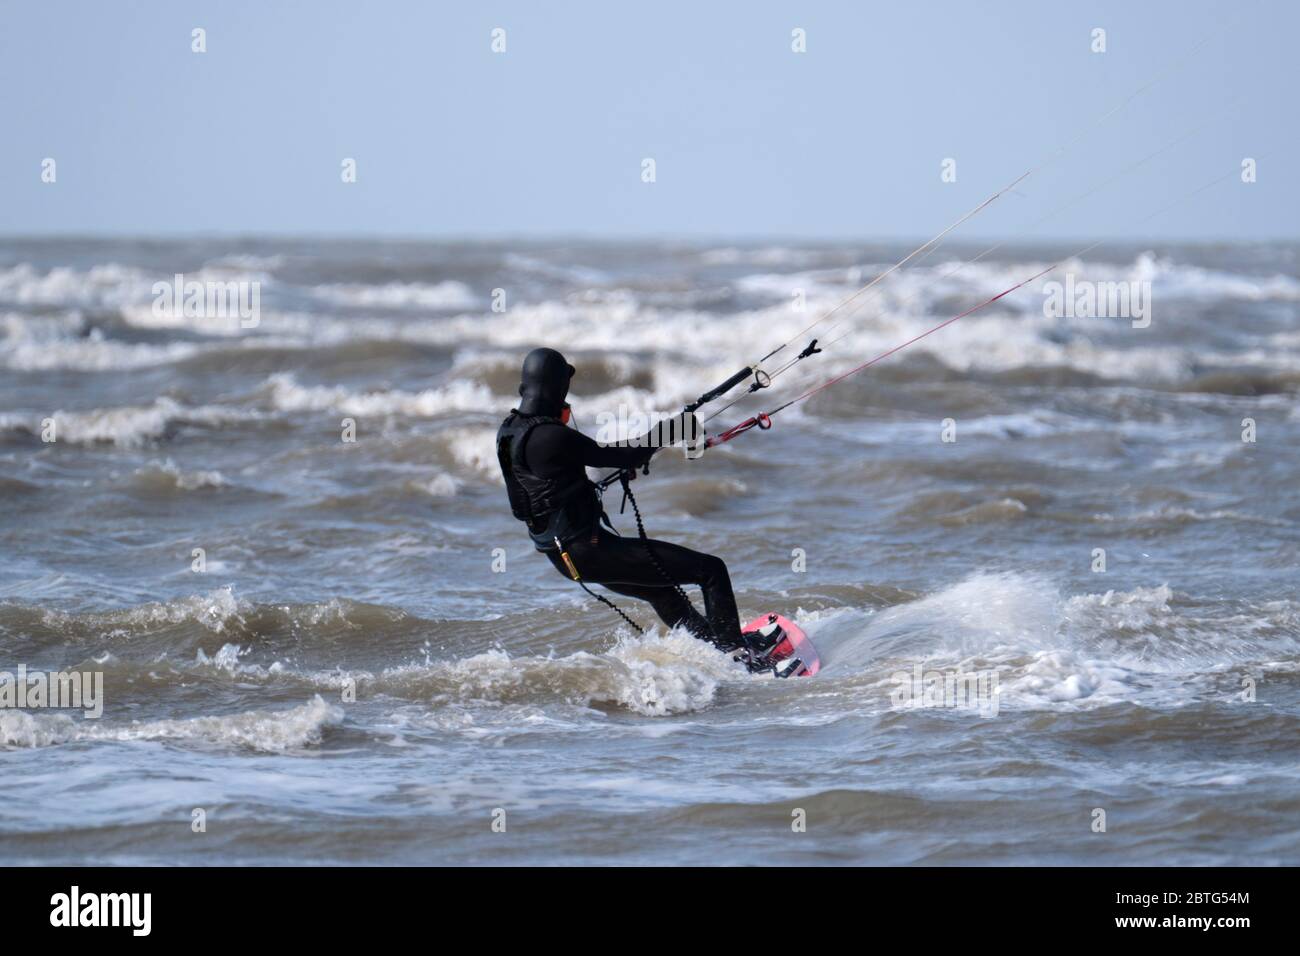 Kitesurfer vêtu d'équipement noir chevauchant les vagues agitées par une journée venteuse à la mer Banque D'Images